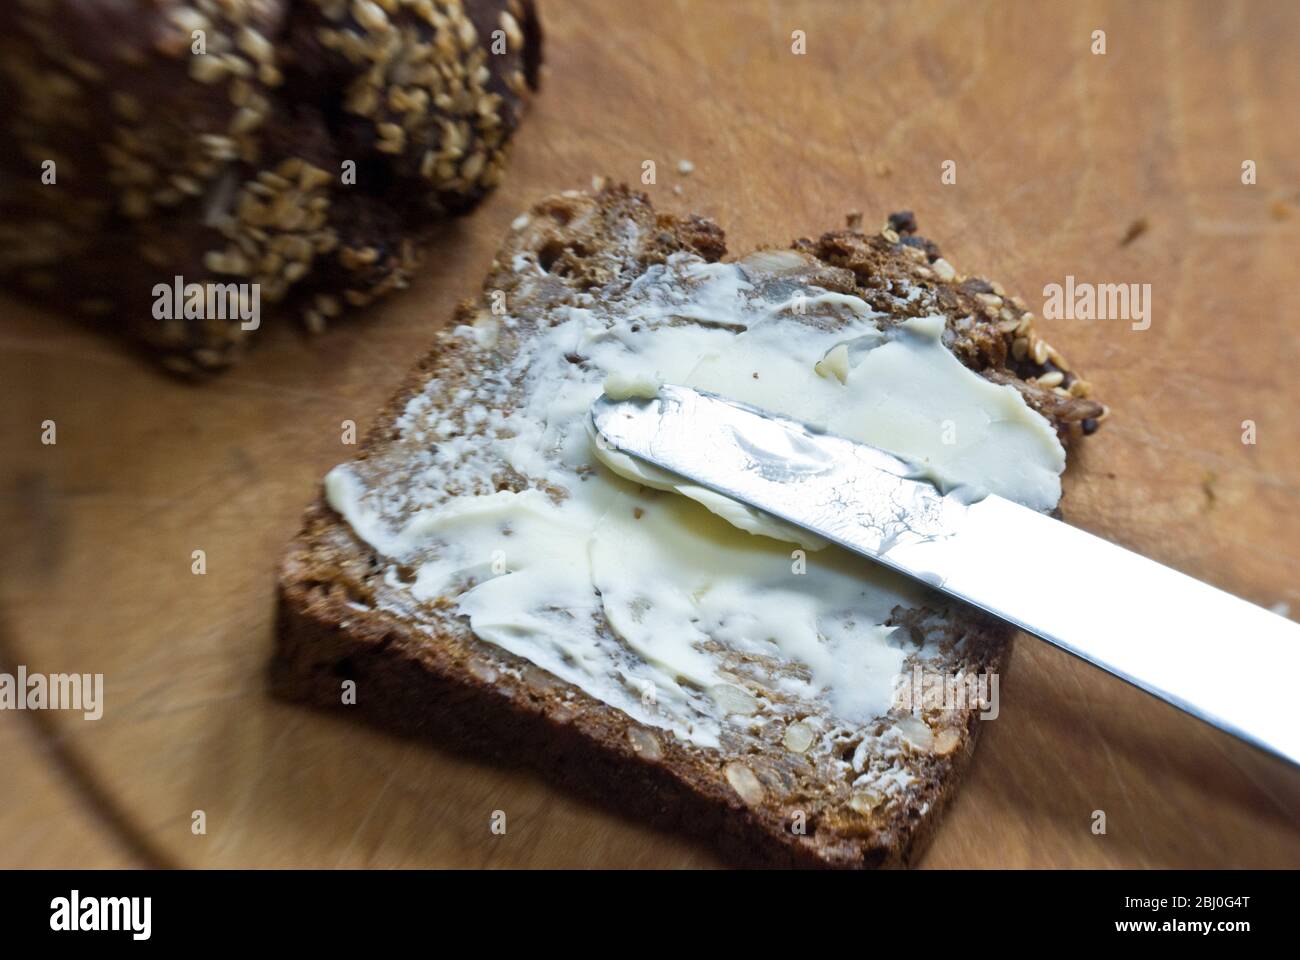 Esparciendo mantequilla en una rebanada de pan de centeno de estilo escandinavo. - Foto de stock